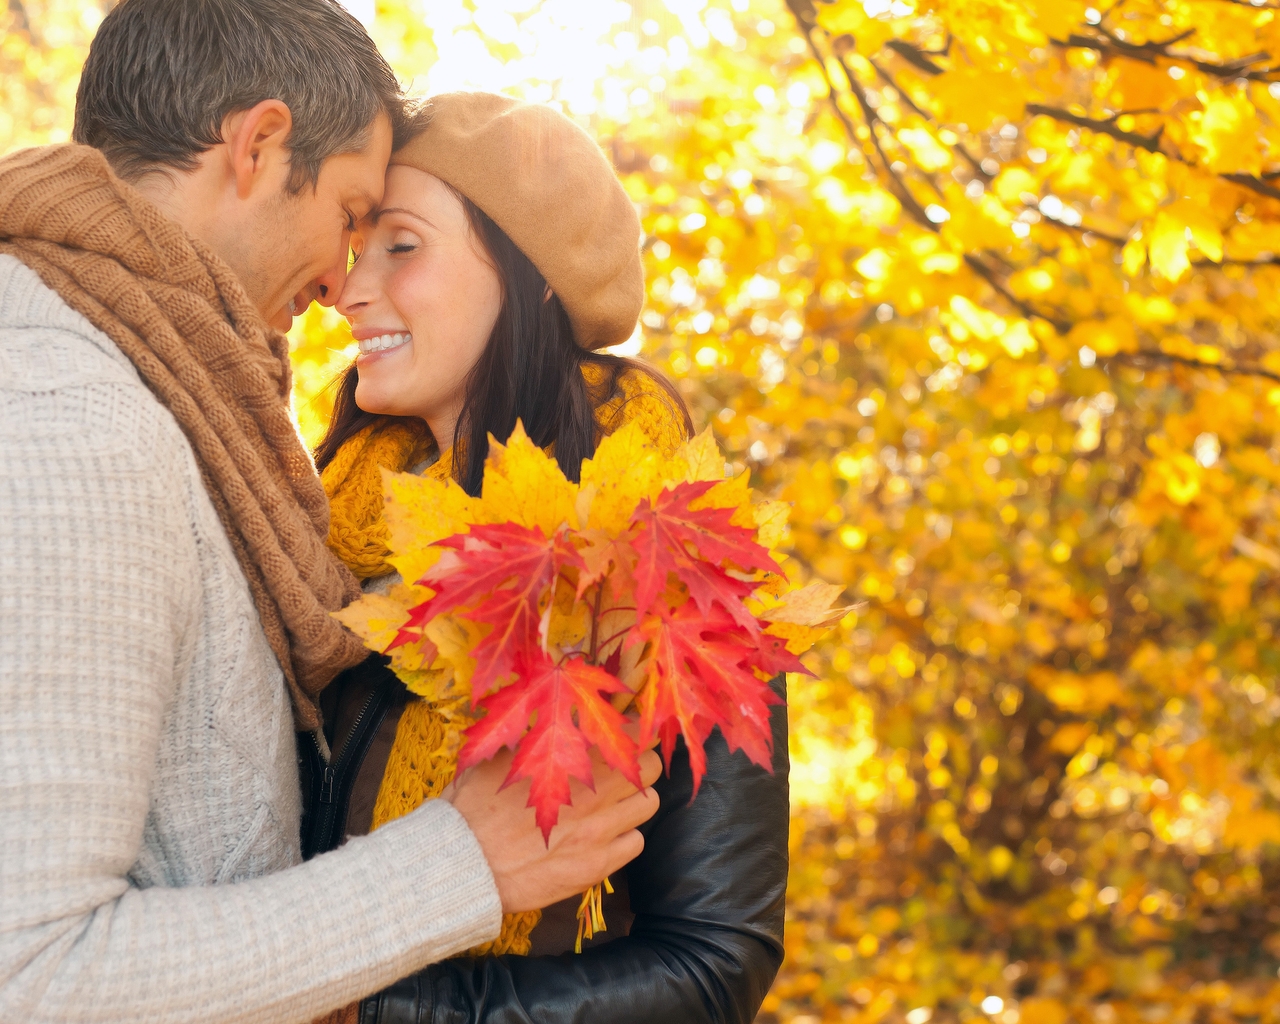 Картинка: Мужчина, женщина, пара, влюблённые, осень, листья, парк